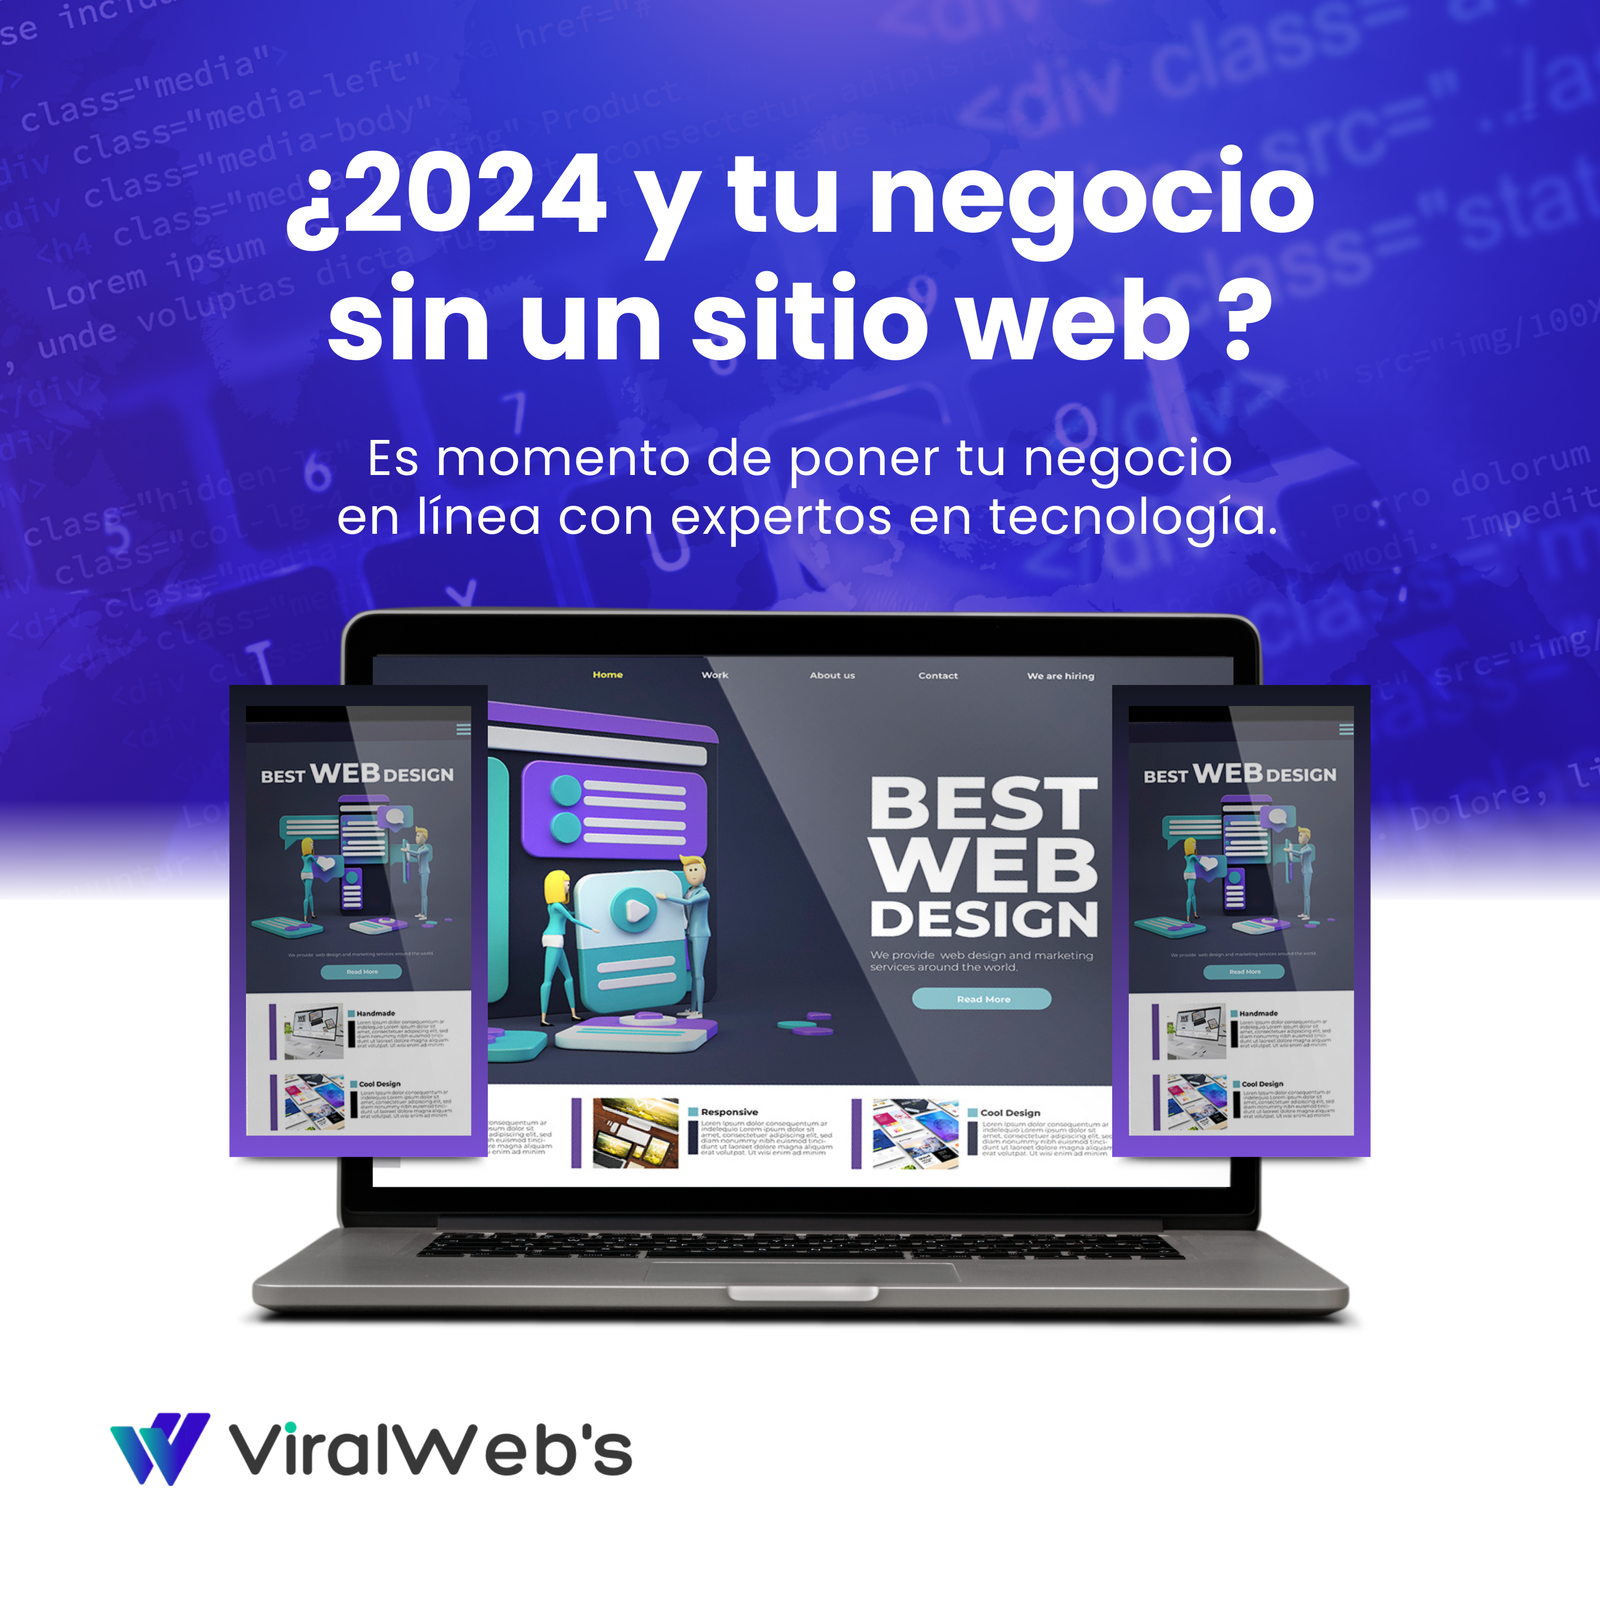 2024 y tu negocio sin un sitio web (1080 × 1920 px)